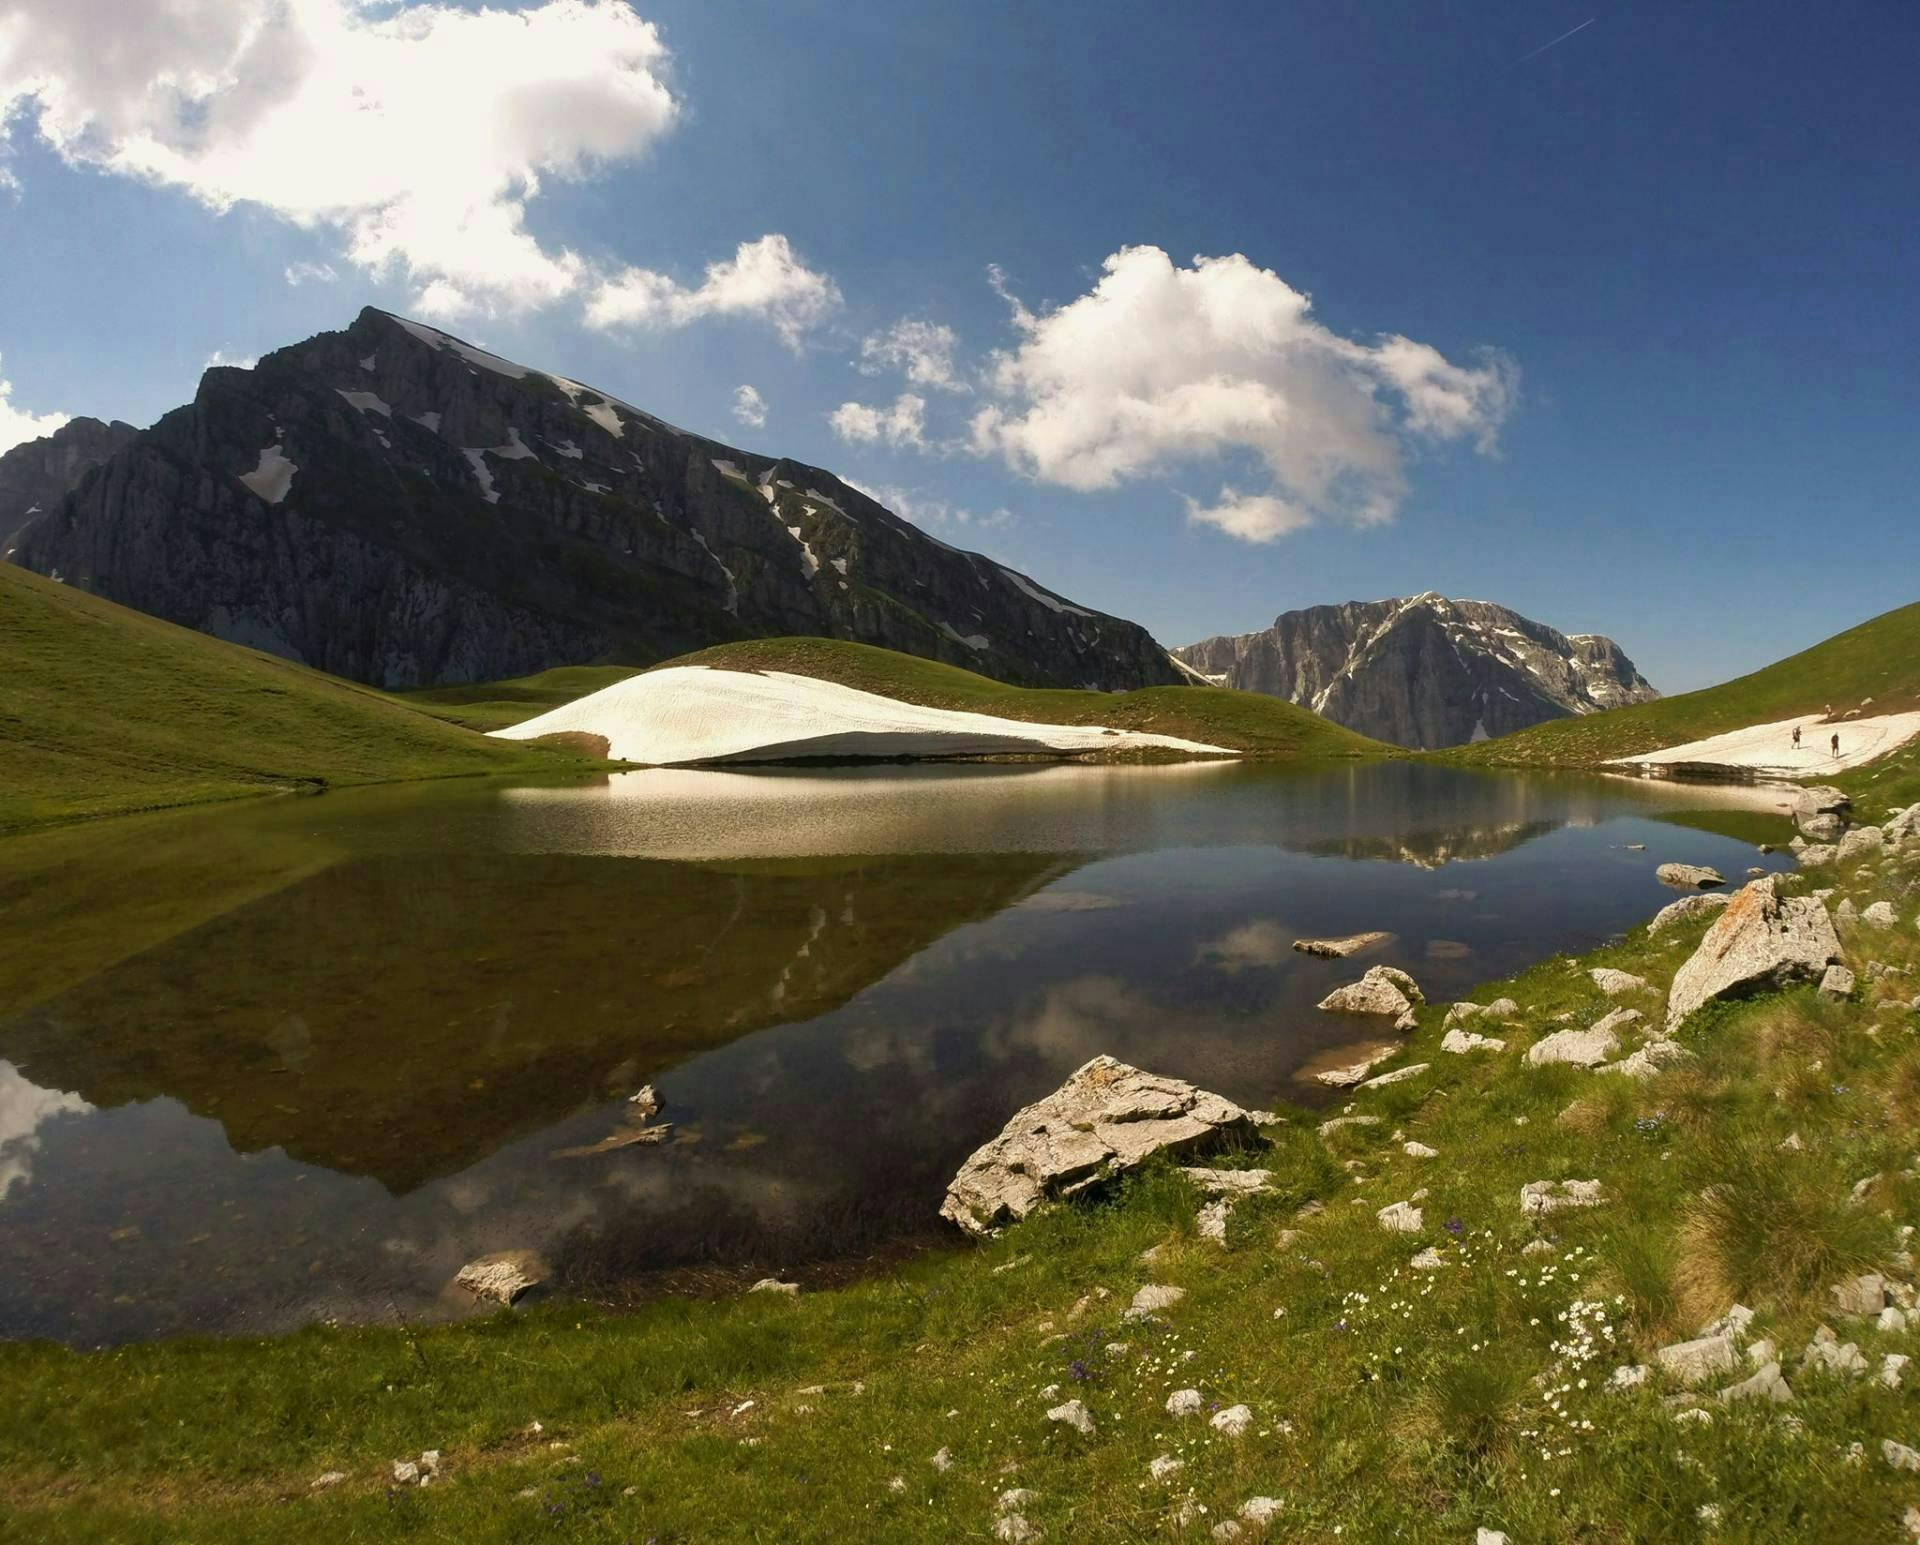 Zagorochoria 6 Days With Hiking, Rafting And Tour - Drakolimni - Vikos Gorge - Megalo Papigo_4022157